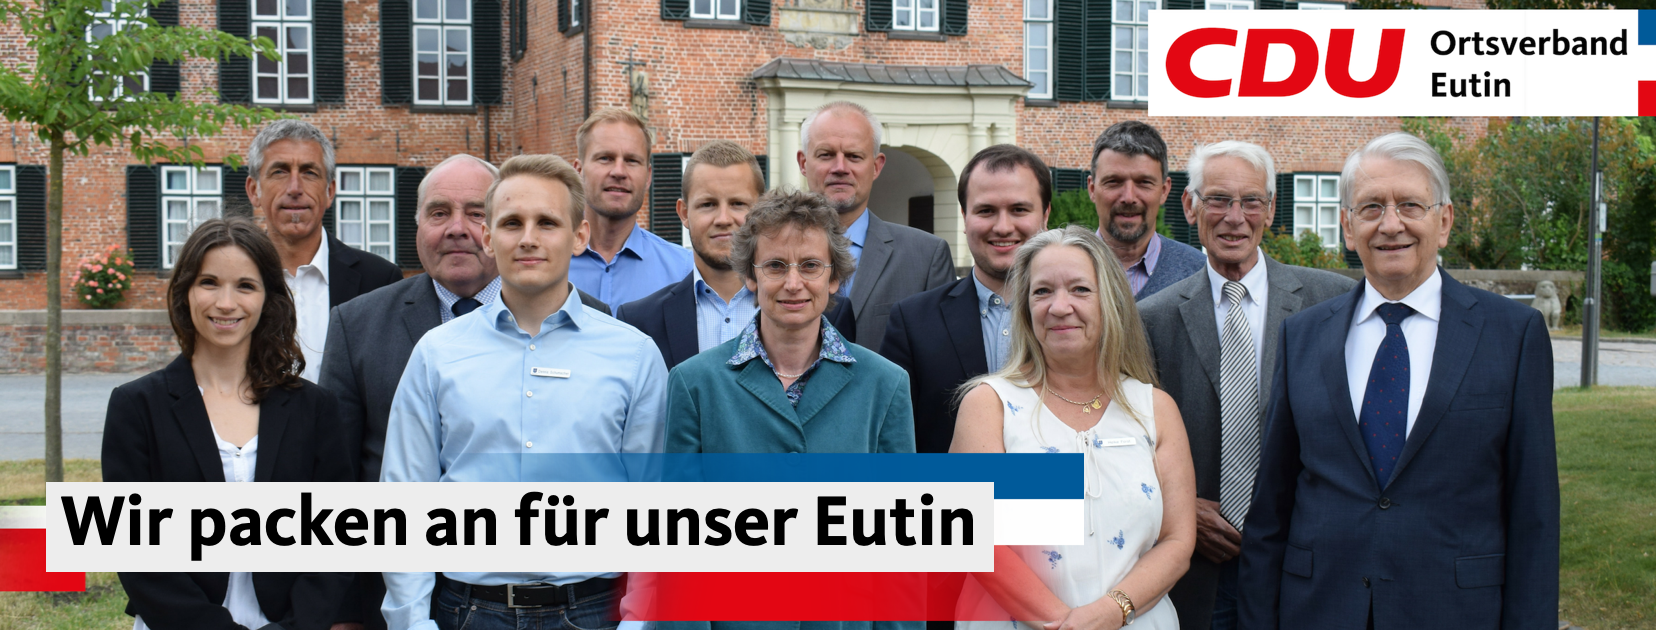 CDU_Eutin_Fraktion.png